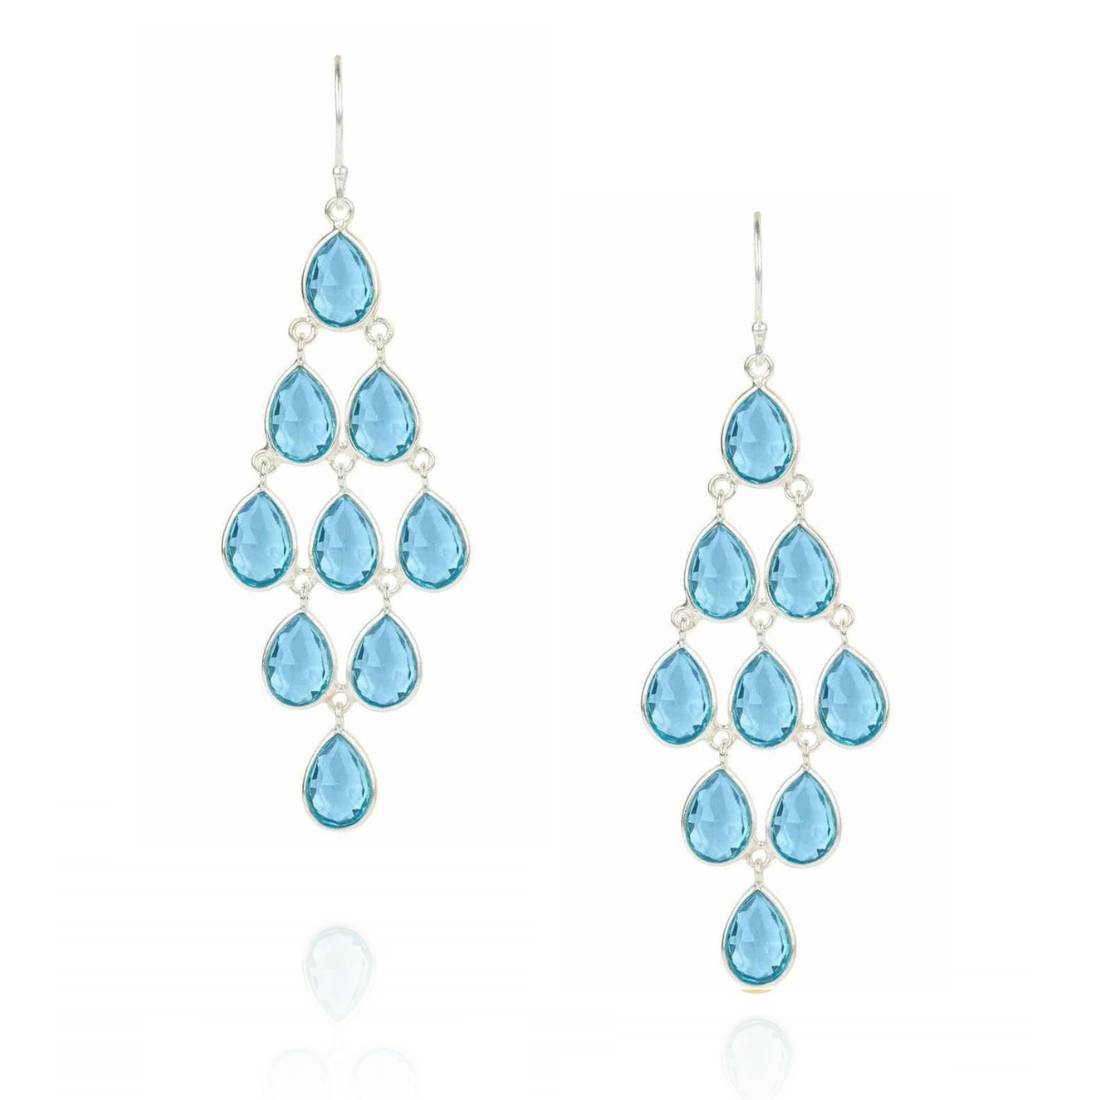 Erviola Gemstone Cascade Earrings in Silver and Blue Topaz